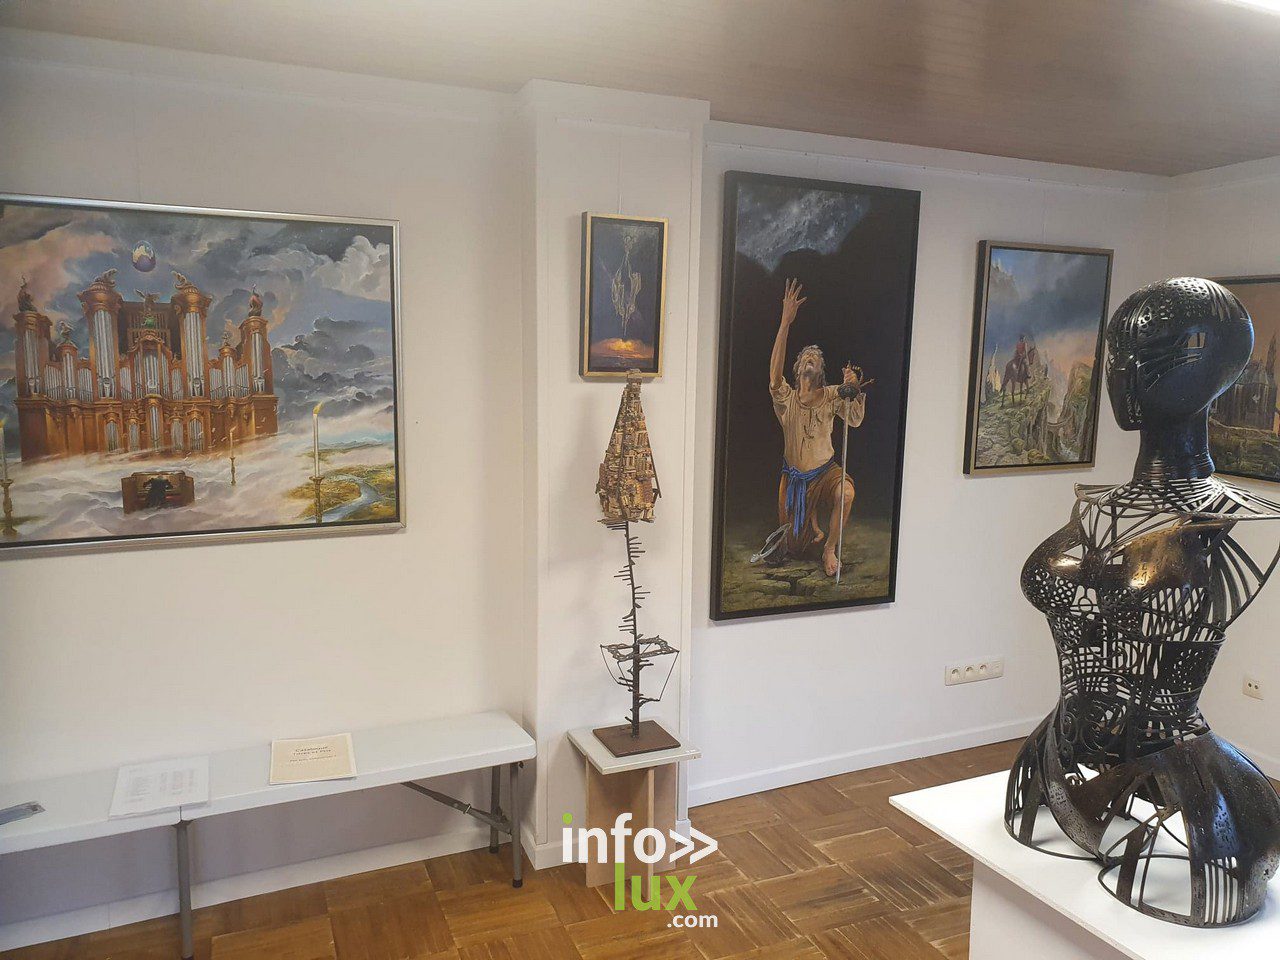 La Galerie du Cheval Blanc à Virton accueille une exposition de 7 artistes qui y exposent leurs œuvres fantastiques jusqu'au 25 septembre 2022.